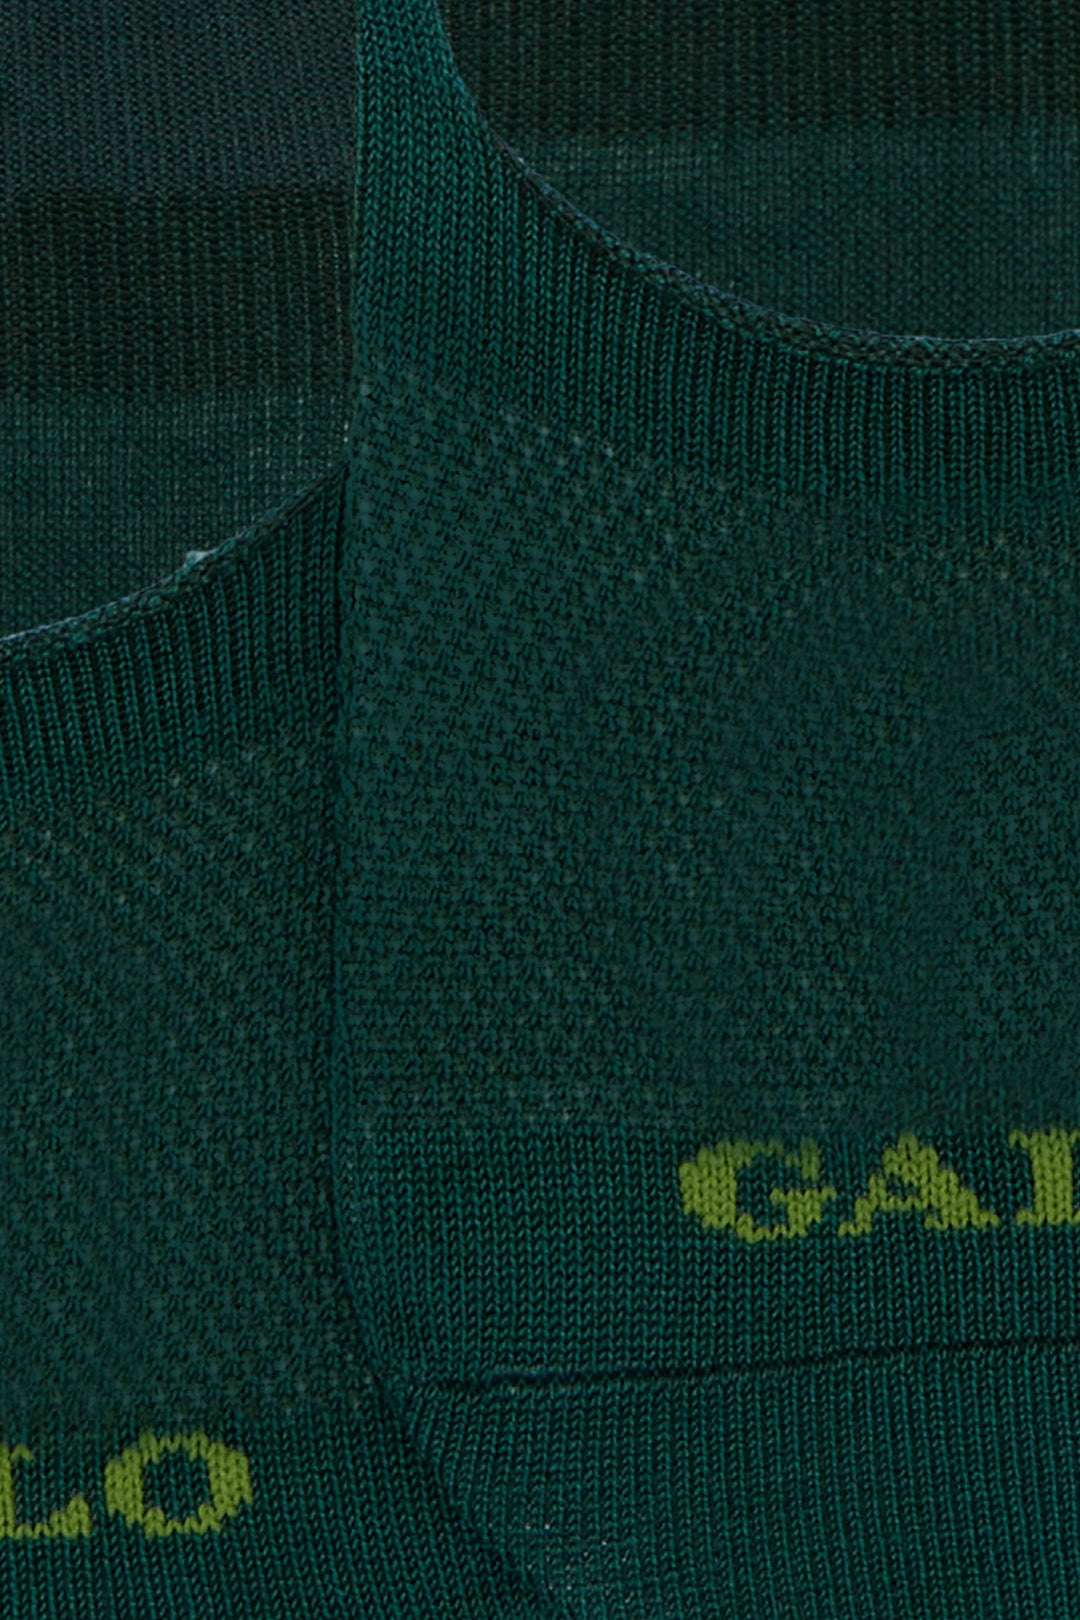 GALLO Solette accollate cotone verde tinta unita - Mancinelli 1954